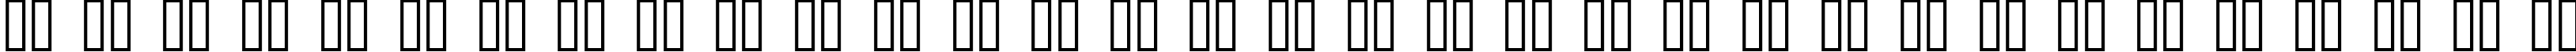 Пример написания русского алфавита шрифтом FontCo Designs 1